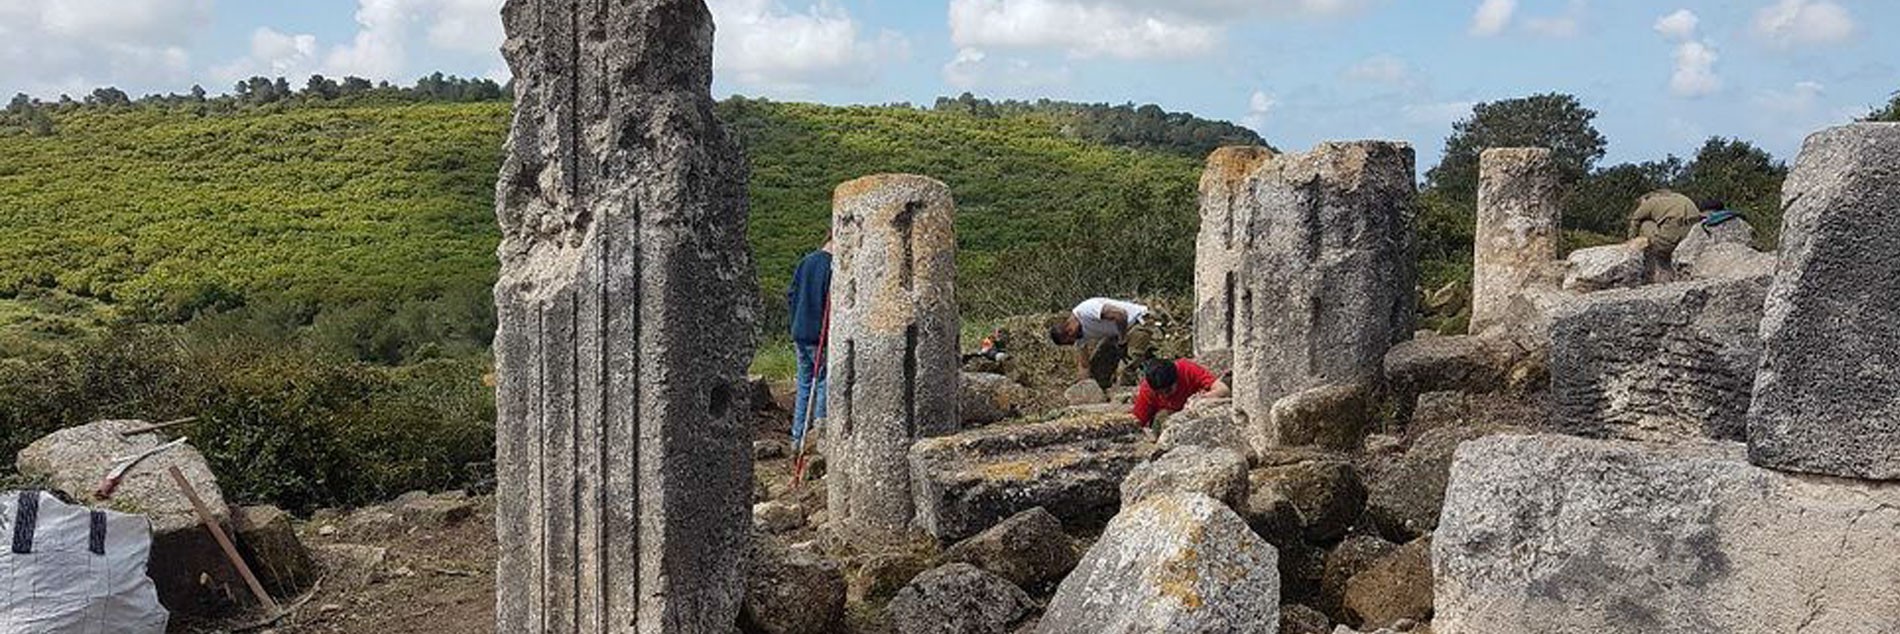 שימור בתי כנסת עתיקים כחלק מפרויקט 'הצלת אתרי מורשת'